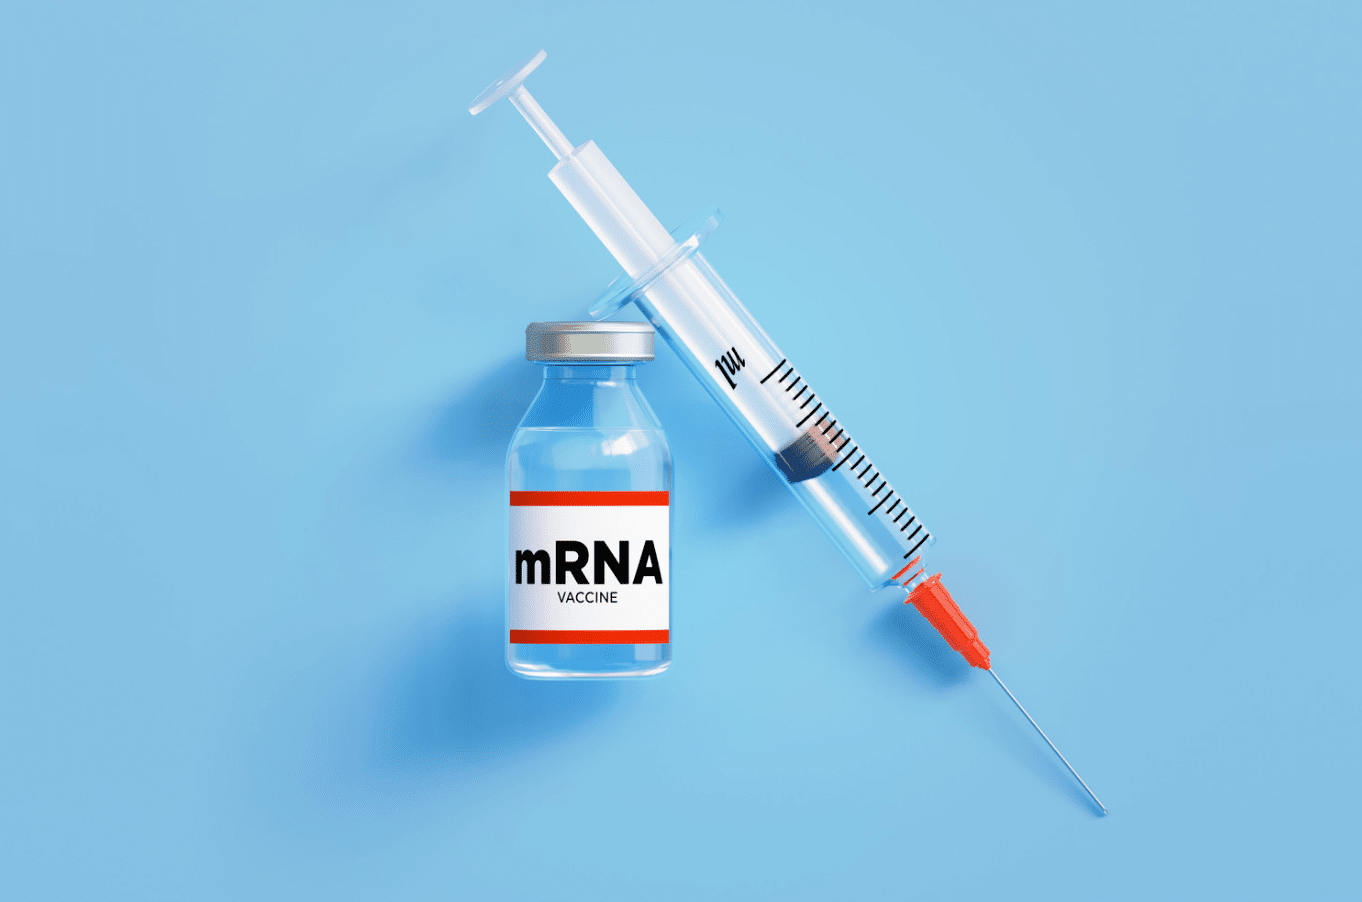 Vaccini antitumorali ad mRNA: come funzionano?